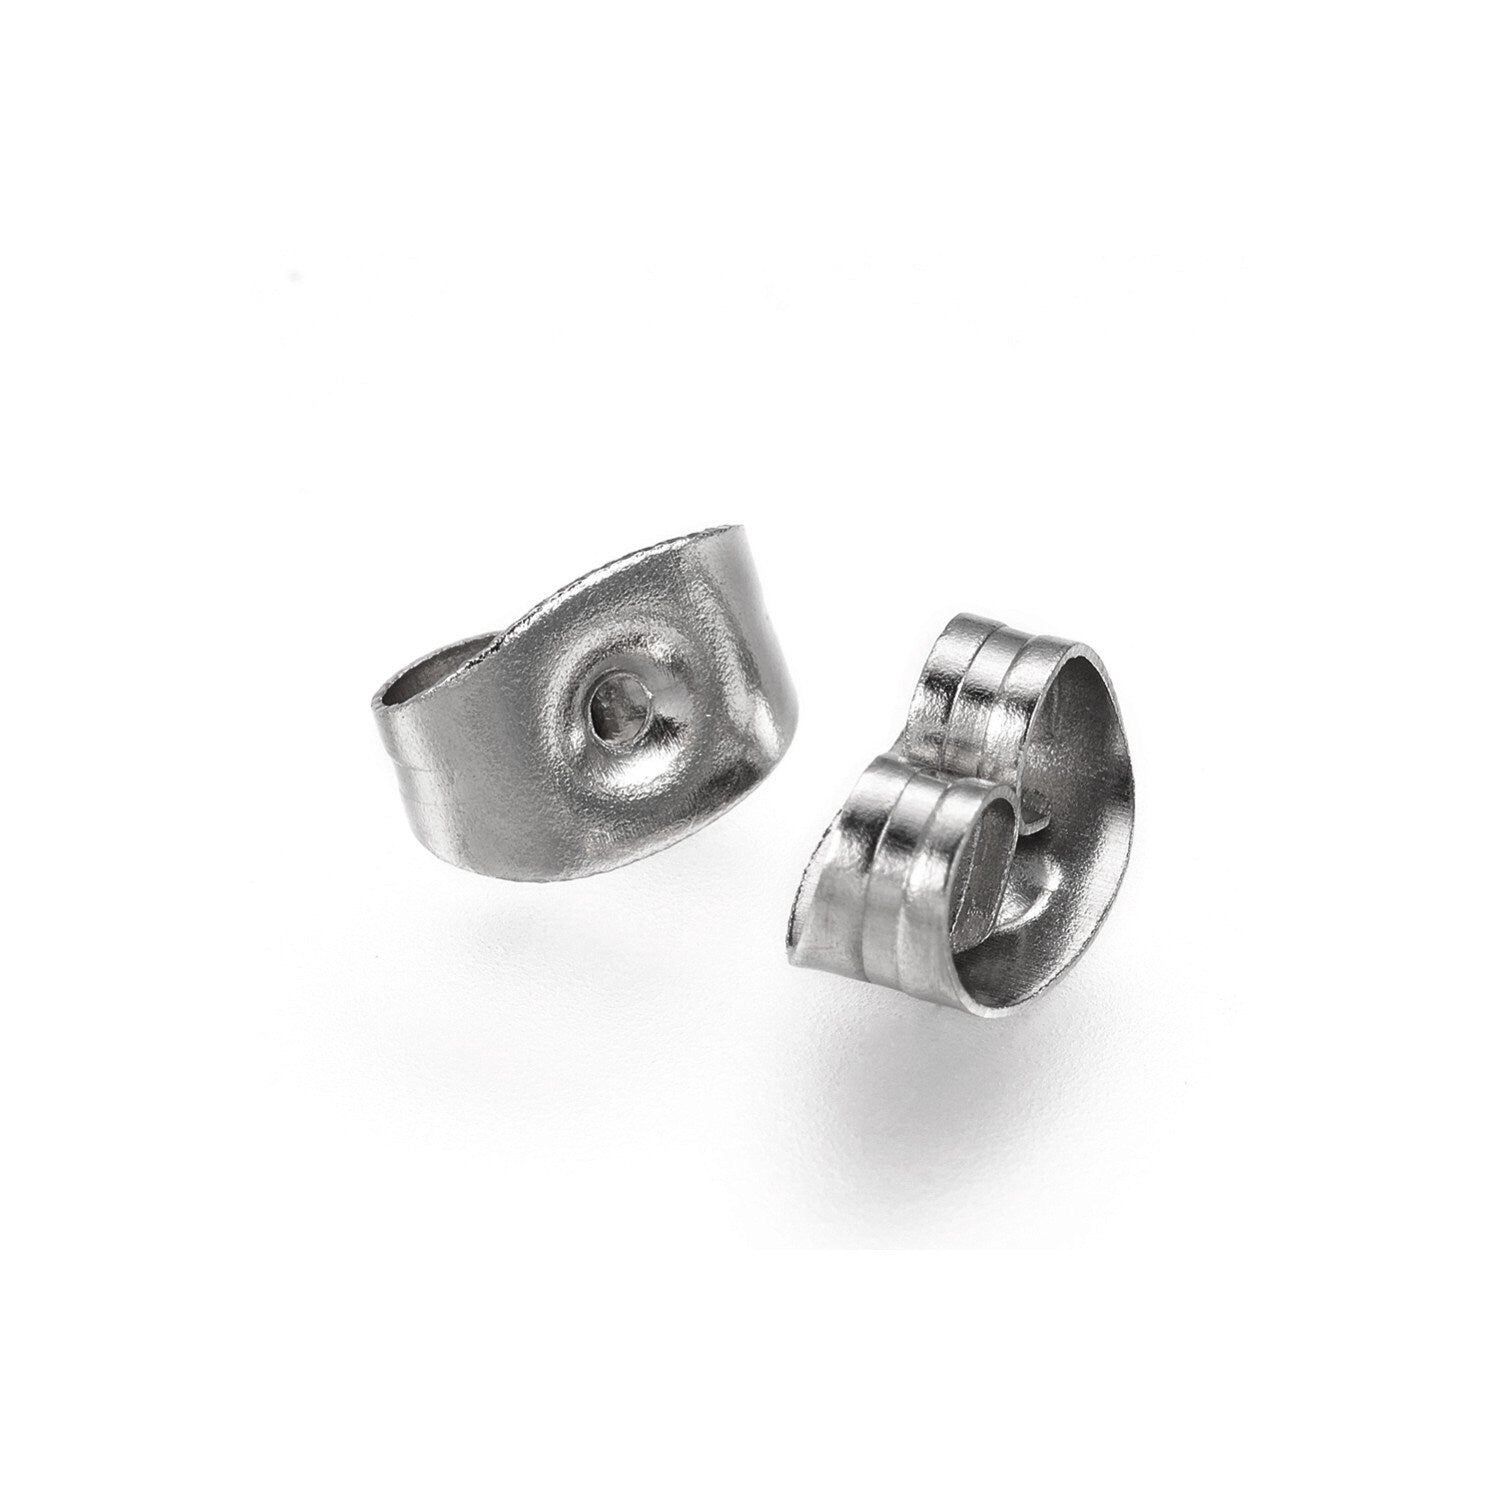 316 Stainless Steel Ear Nut Earring Backs Multi-size Replacements Safety Earring  Backs Locking for Sensitive Ears Studs Earrings - AliExpress